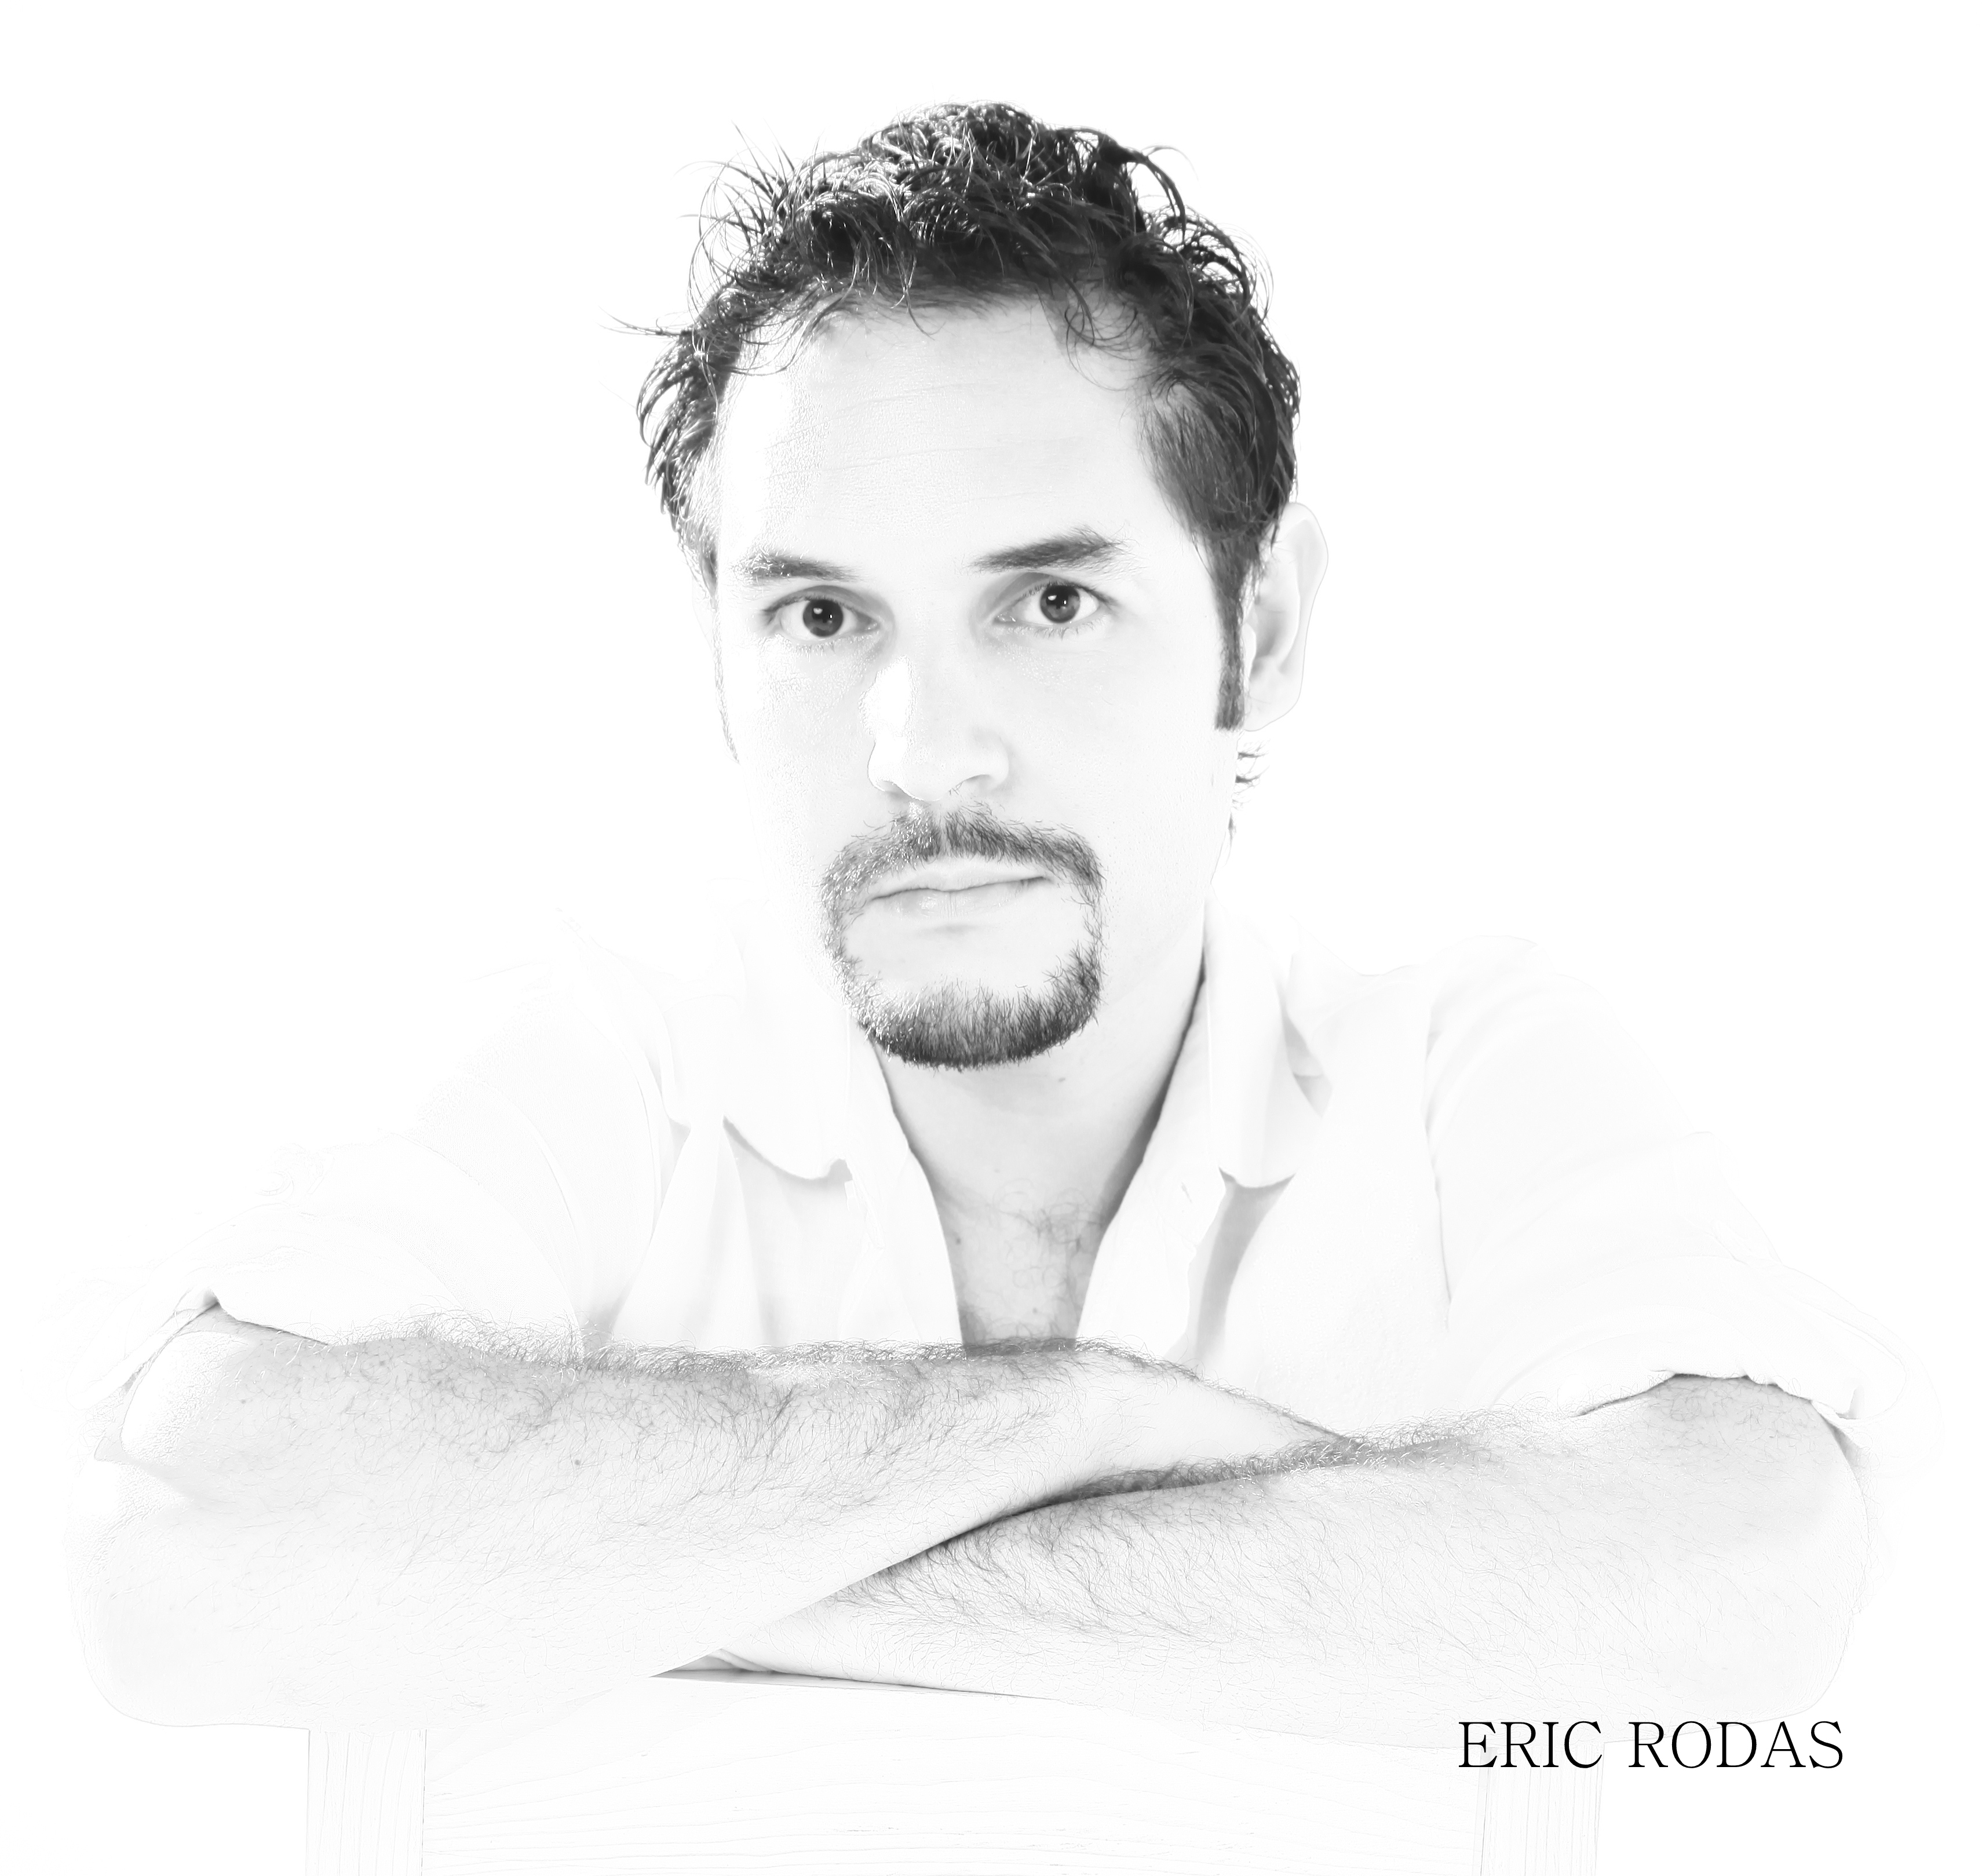 Eric Rodas